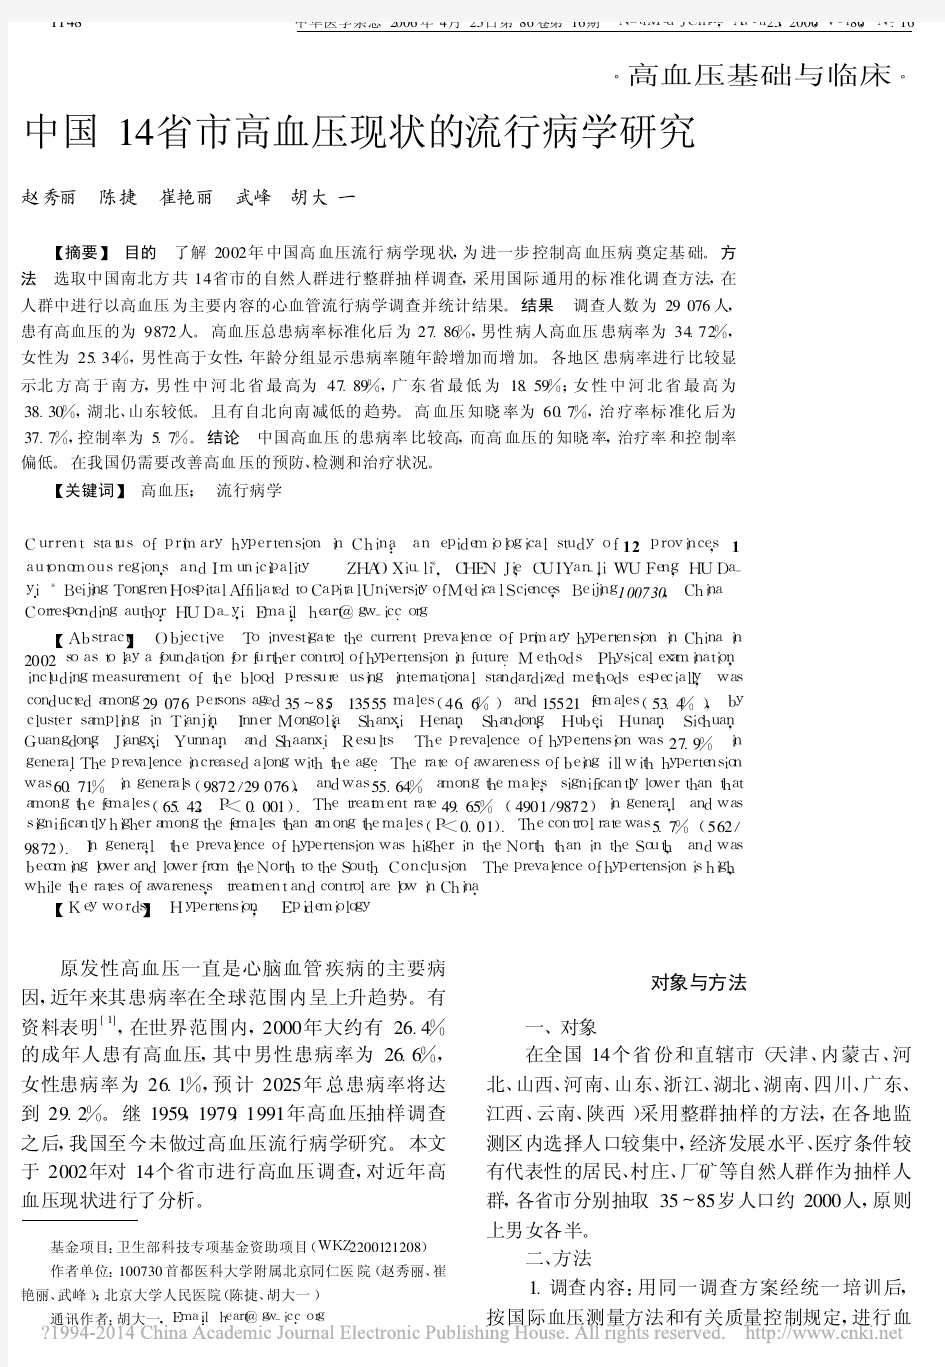 中国14省市高血压现状的流行病学研究_赵秀丽